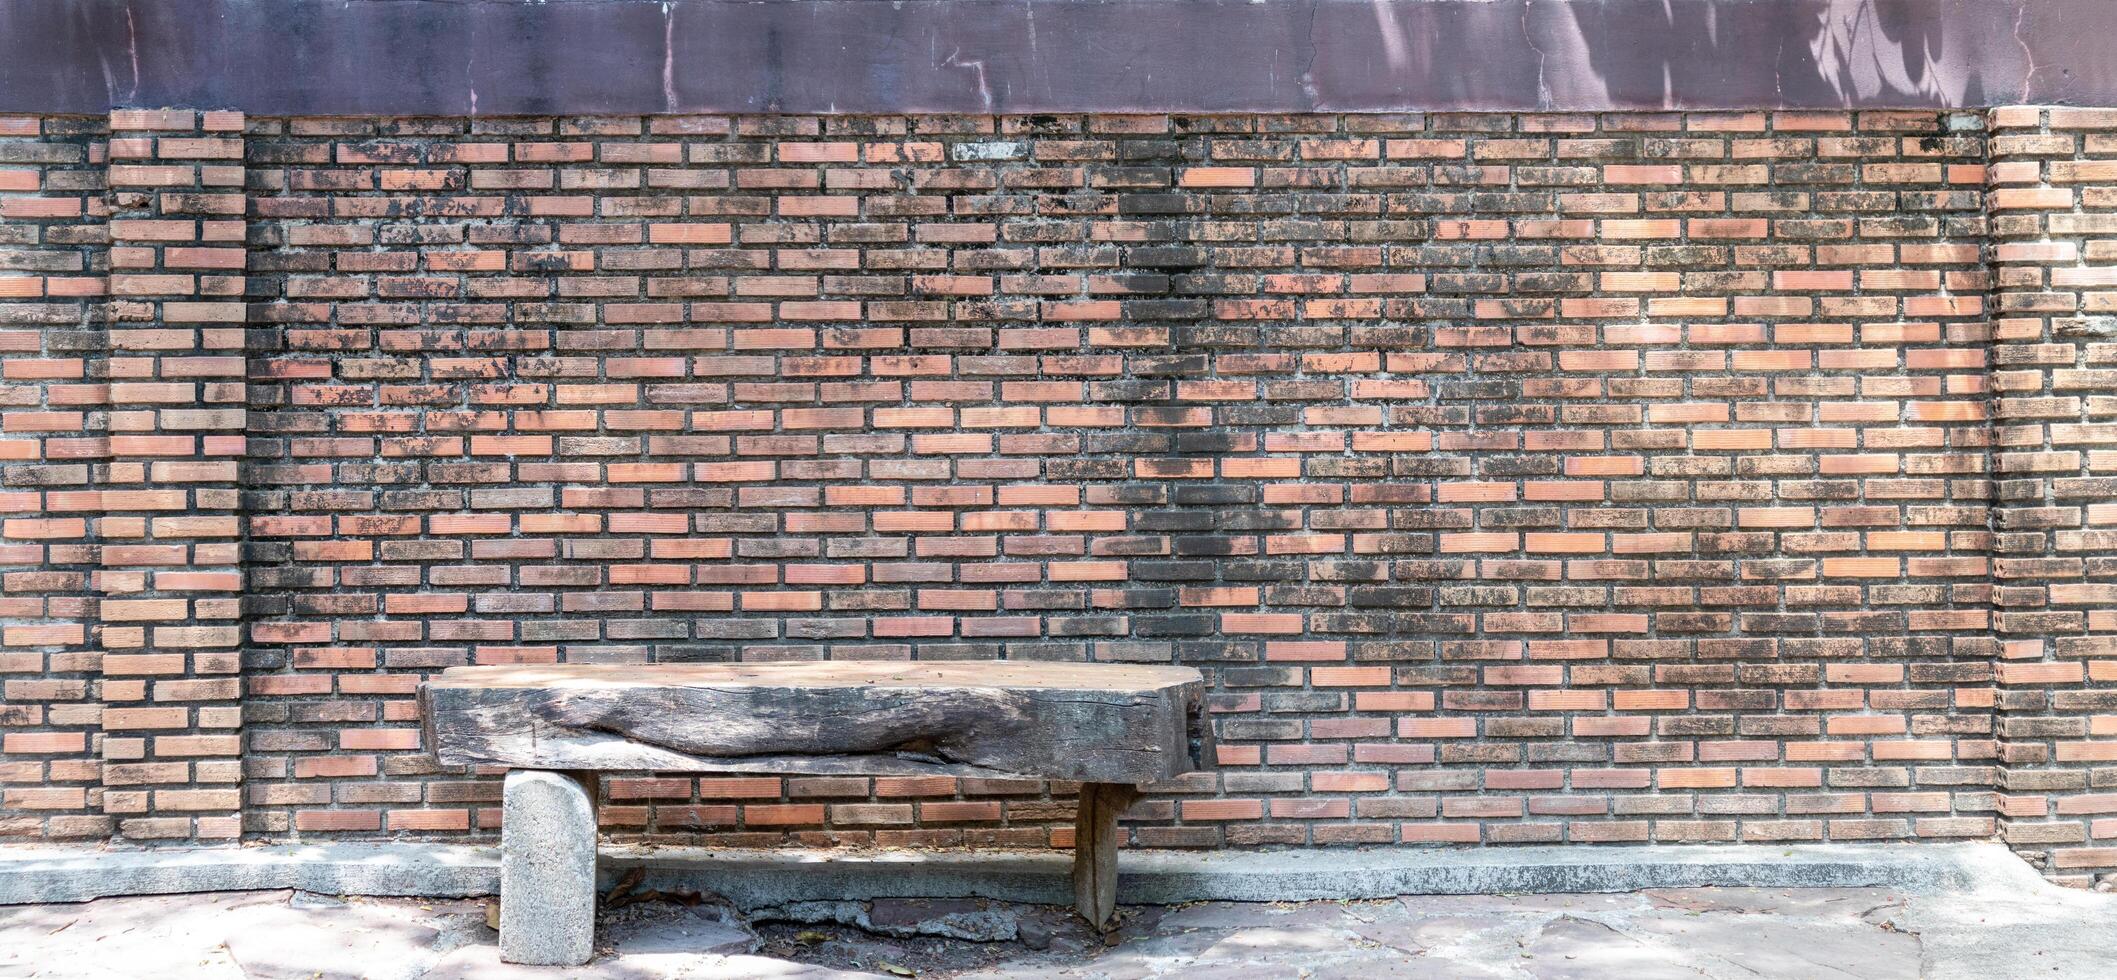 texture de la brique rouge utilisée pour les images d'arrière-plan, le motif des briques avec une chaise en bois photo